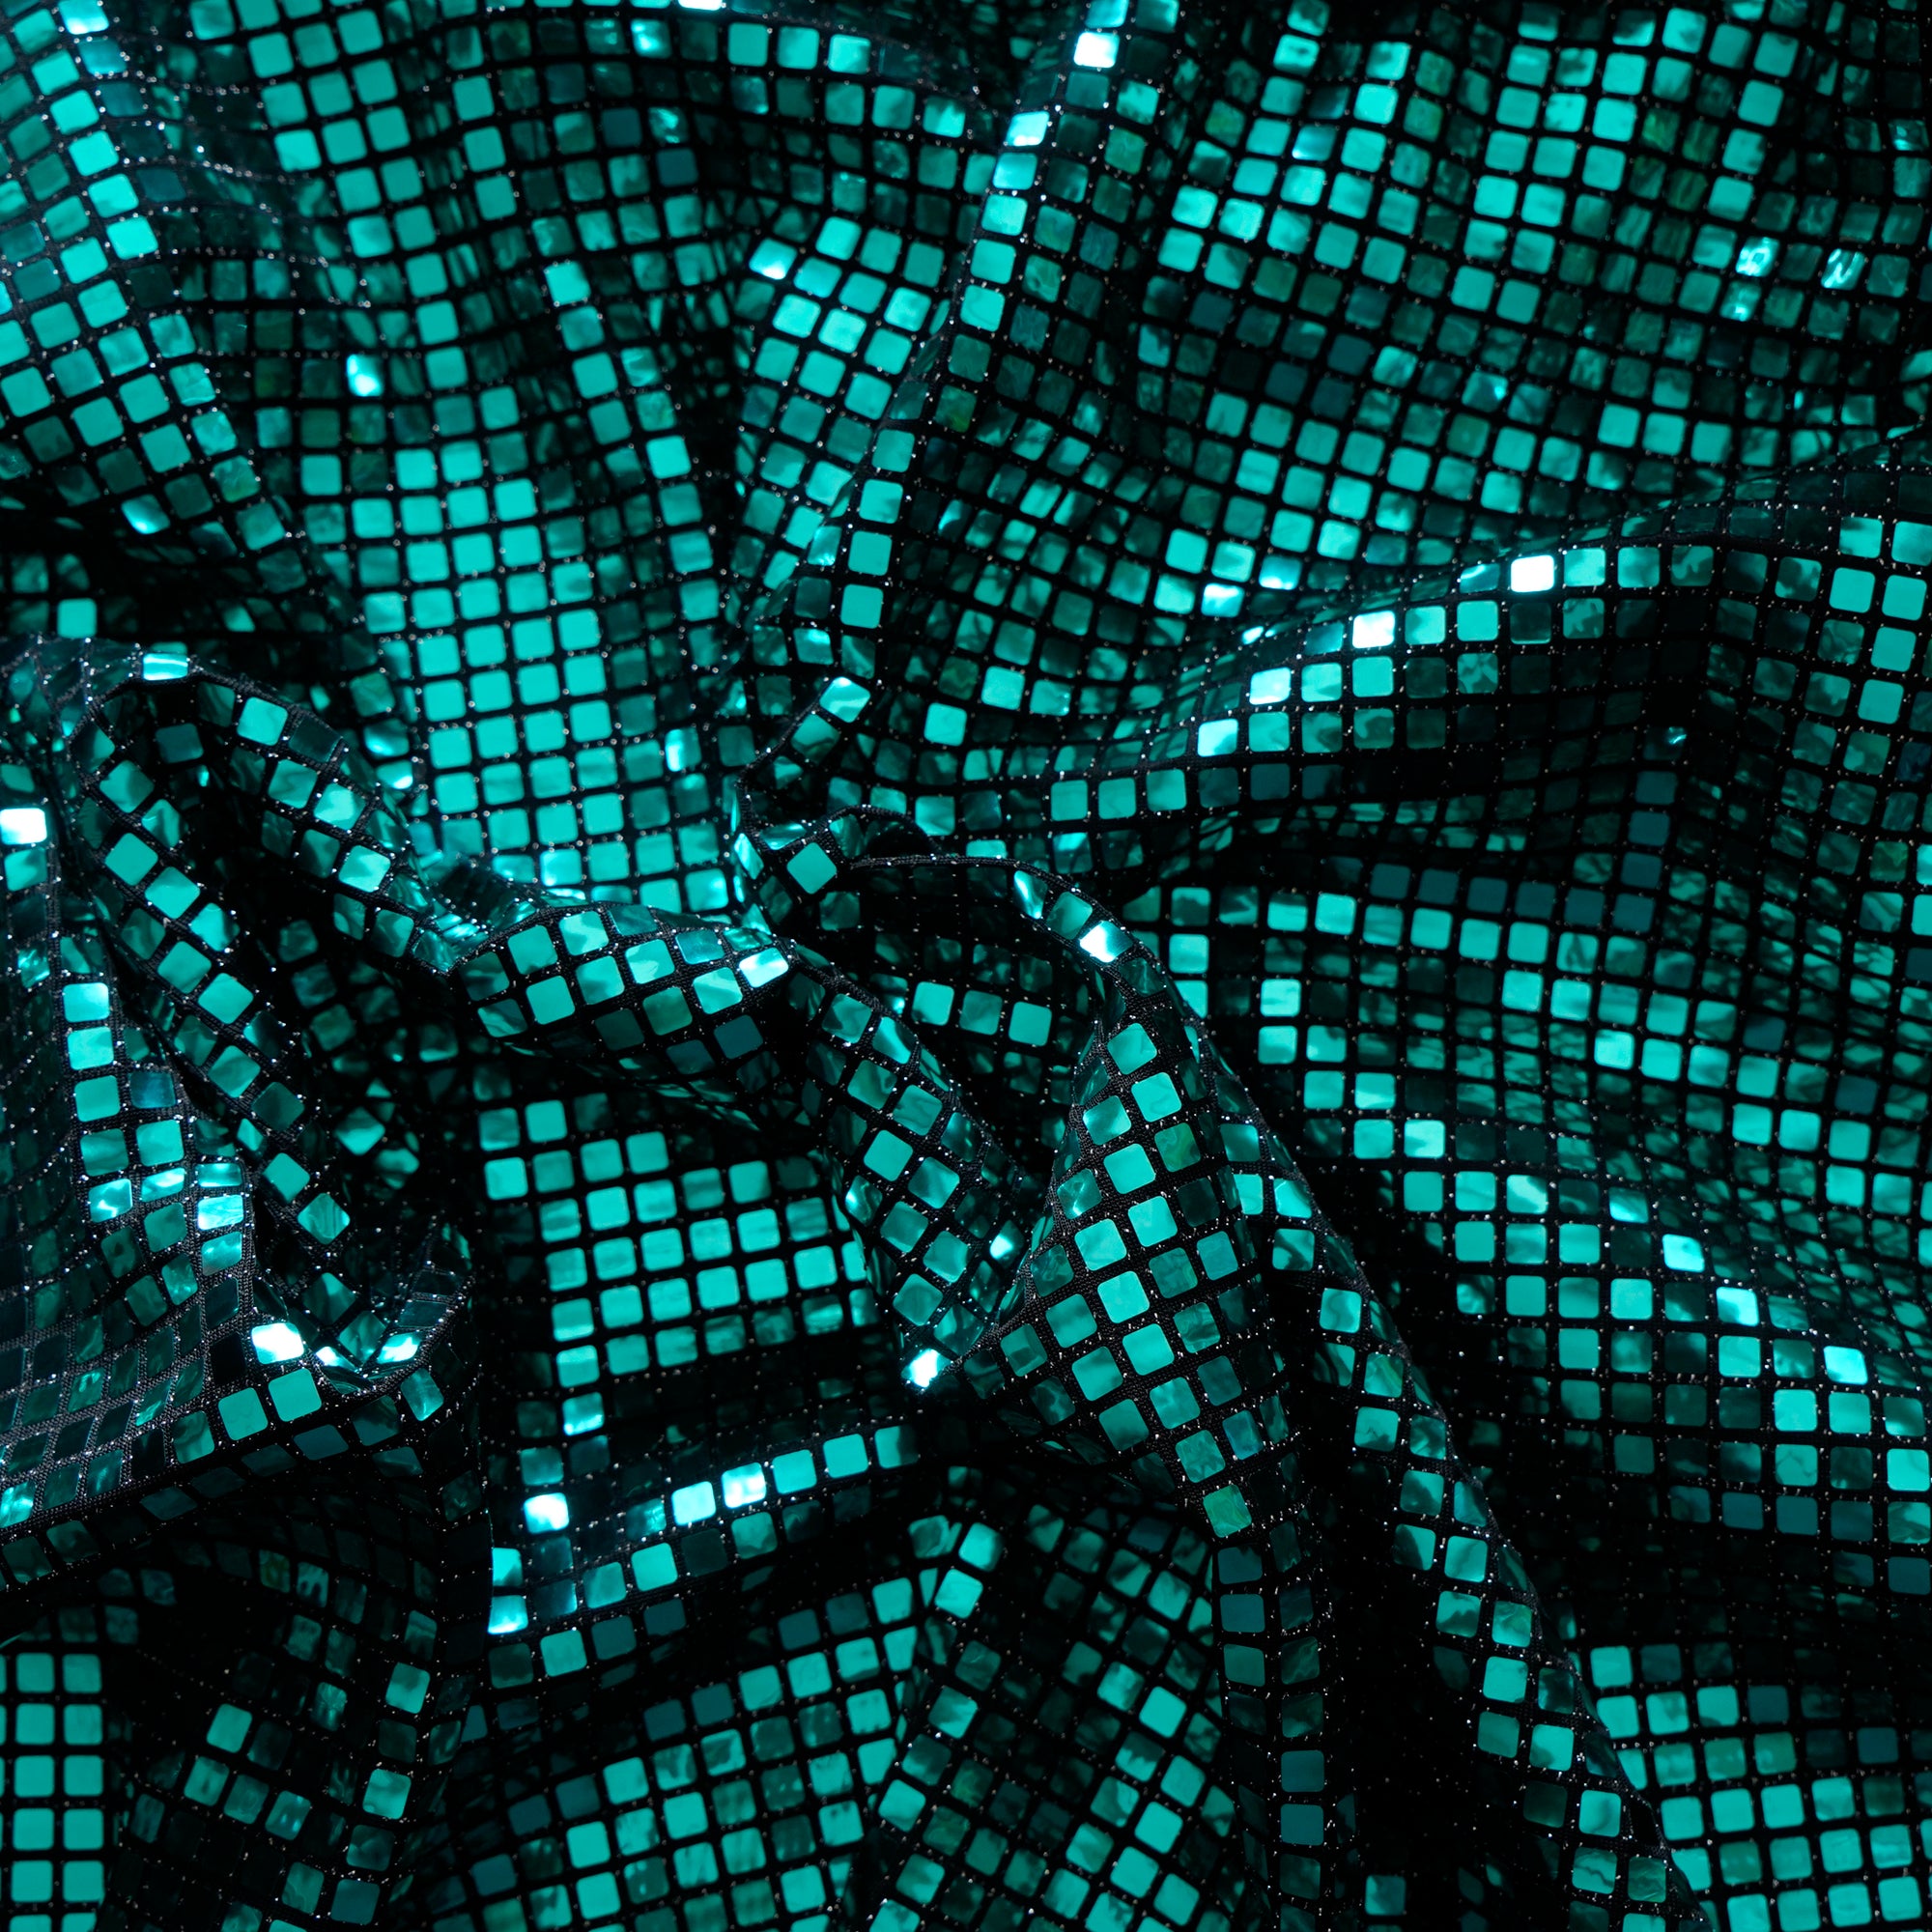 Green Geometric Pattern Imported Fancy Glitter Foil Fabric